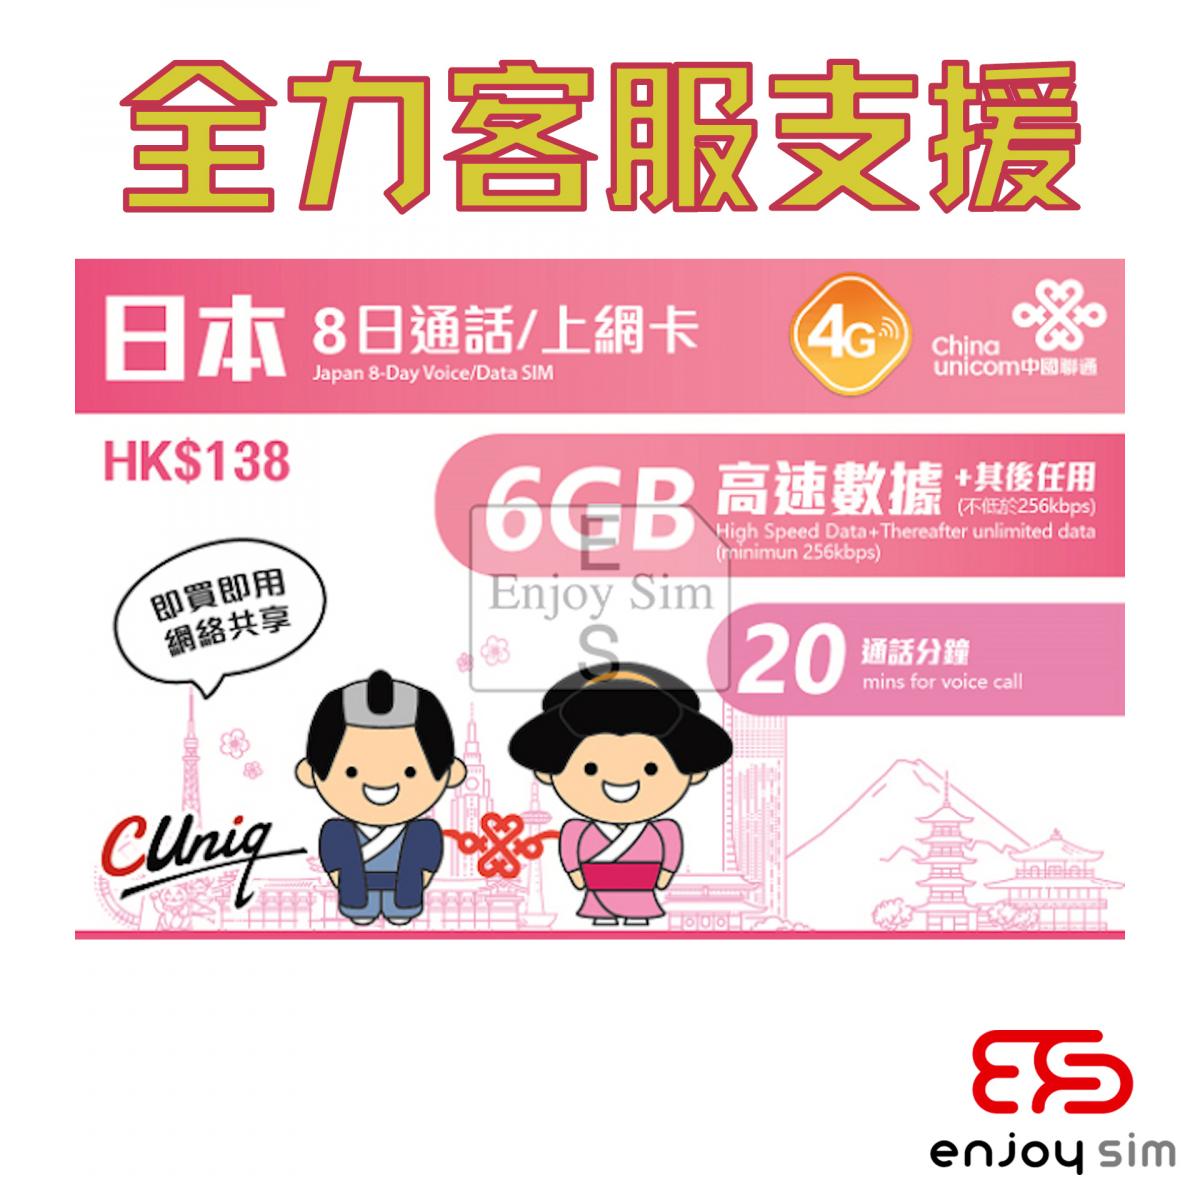 8日通話【日本】(6GB) 4G/3G 無限上網卡數據卡SIM卡電話咭